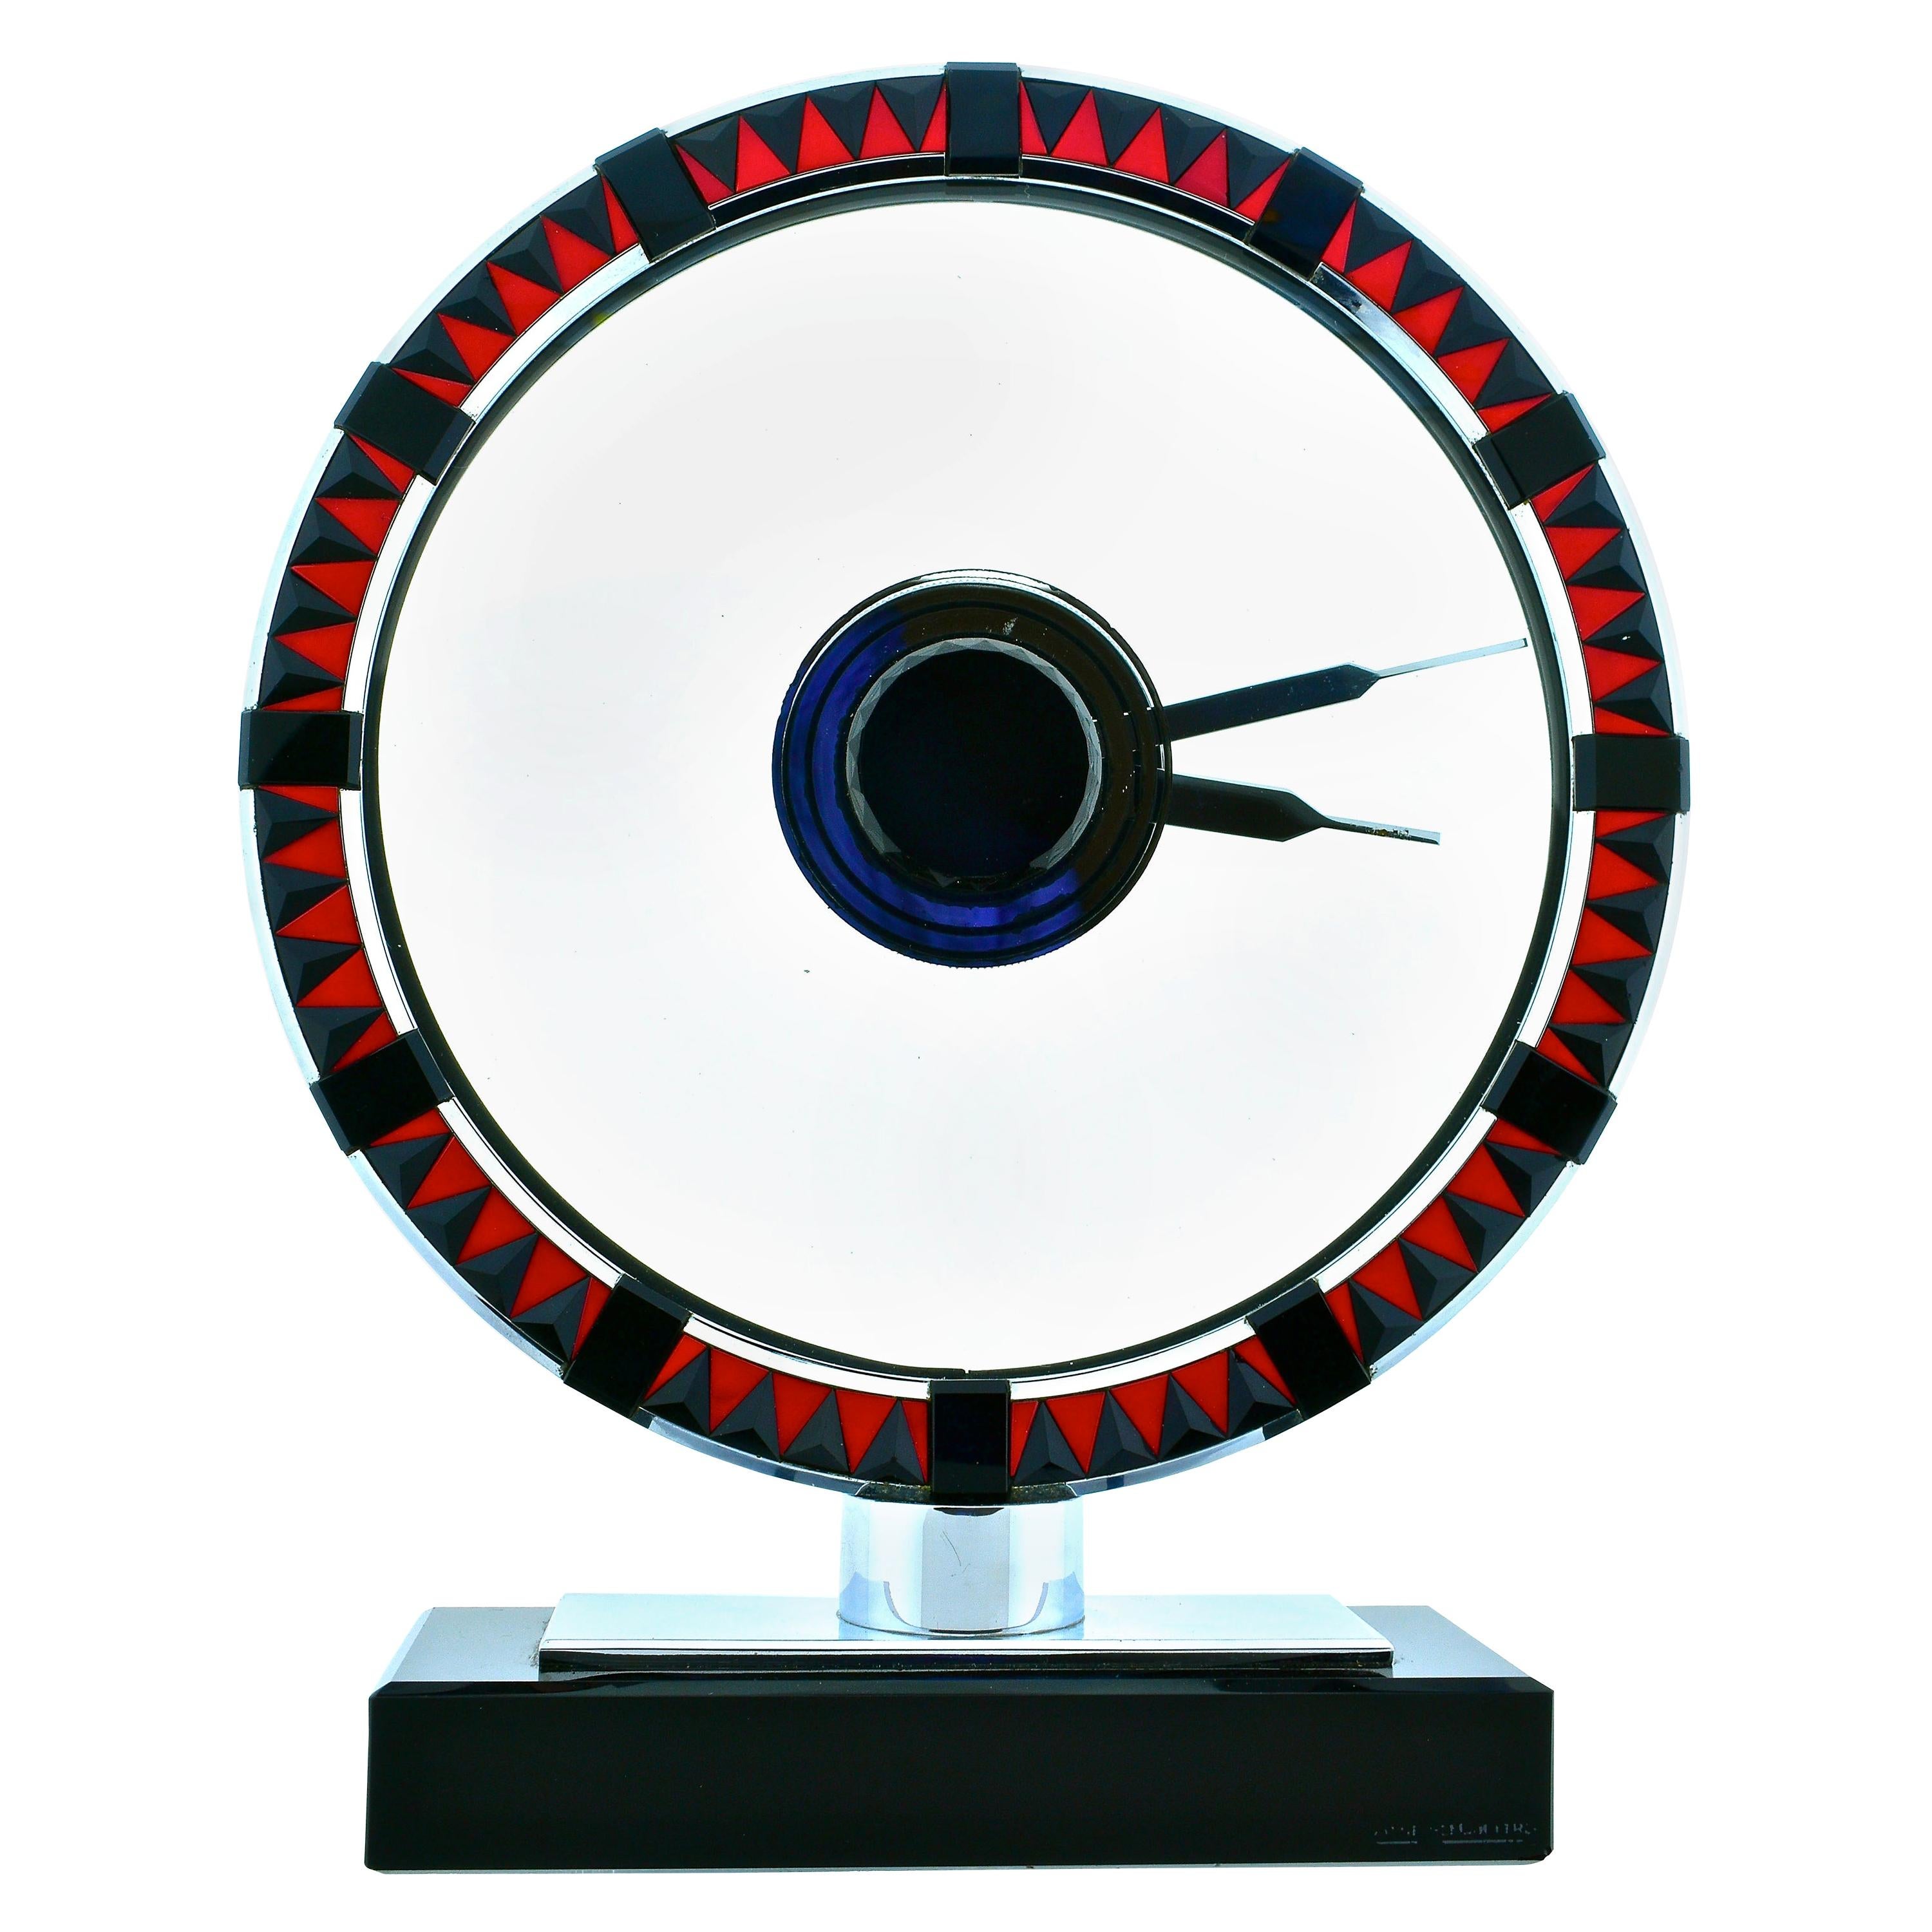 Jaeger-LeCoultre Art Deco Uhr mit einer Größe von 8 5/8th von 7 1/8th Zoll, ist dies wahrscheinlich ein einziges Beispiel für eine Art Deco Uhr in poliertem Edelstahl, mit facettierten pyramidenförmigen dreieckigen Onyx abwechselnd mit lebhaften